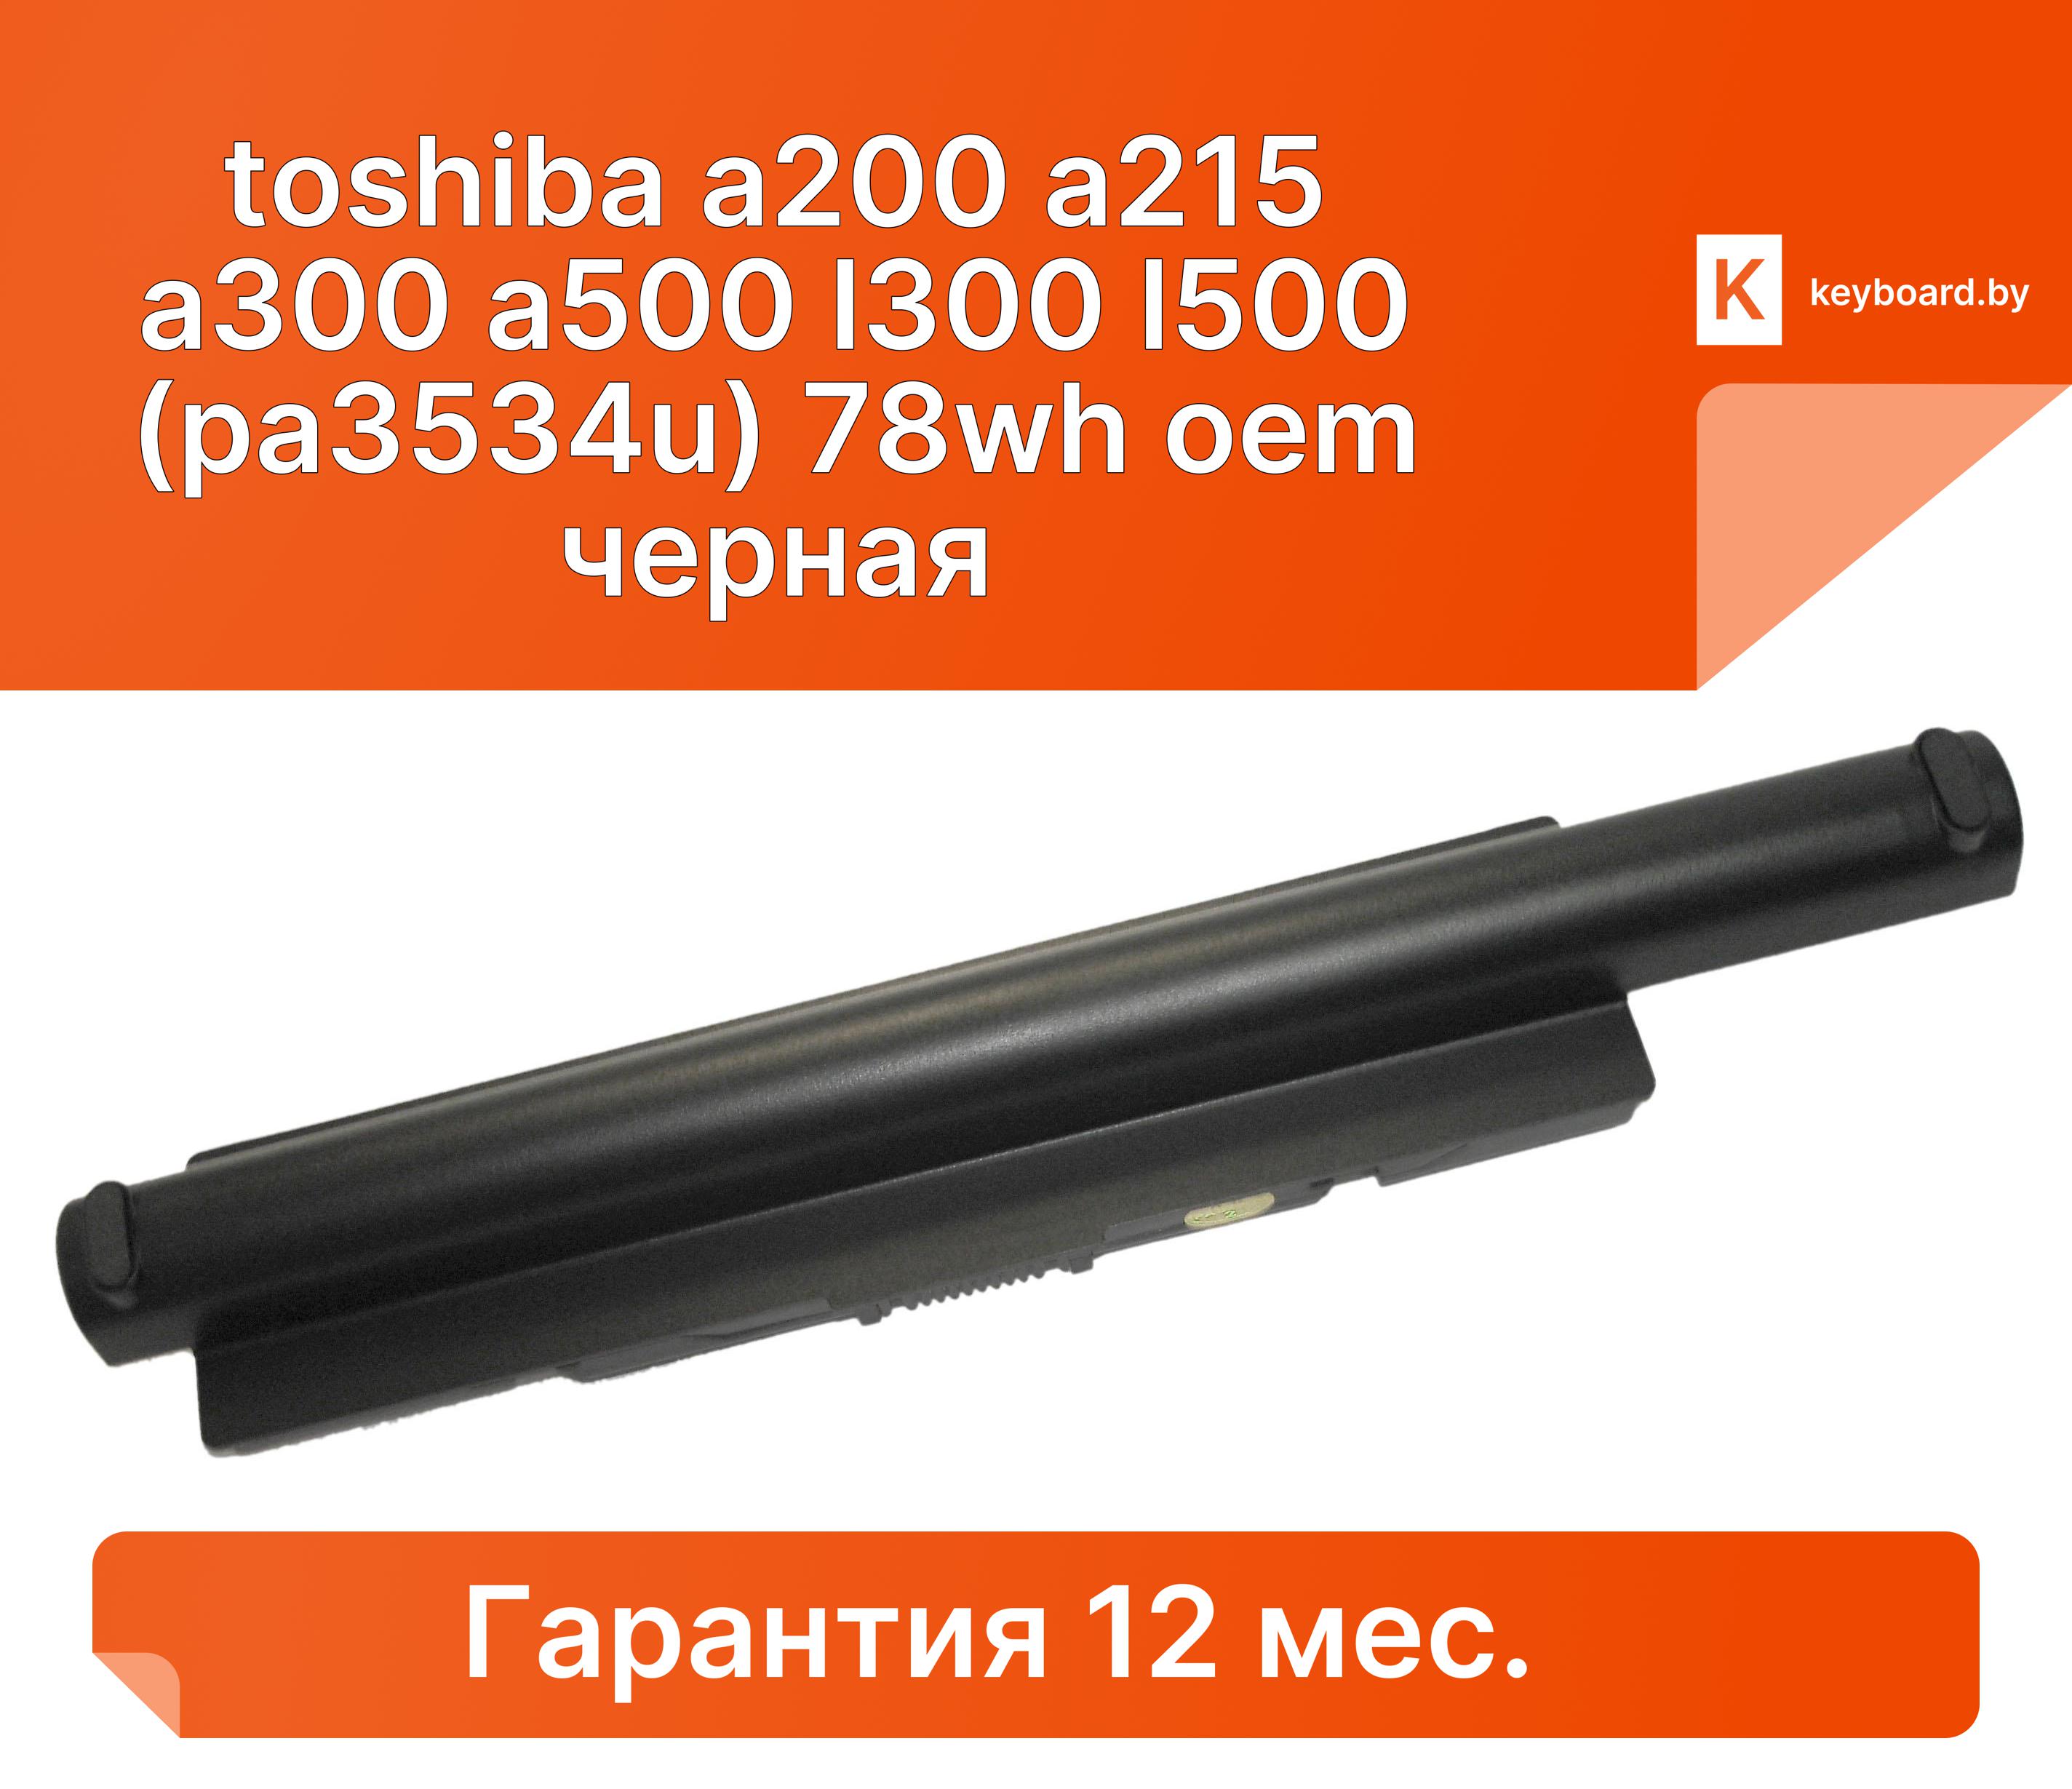 Аккумуляторная батарея для ноутбука toshiba a200 a215 a300 a500 l300 l500 (pa3534u) 78wh oem черная